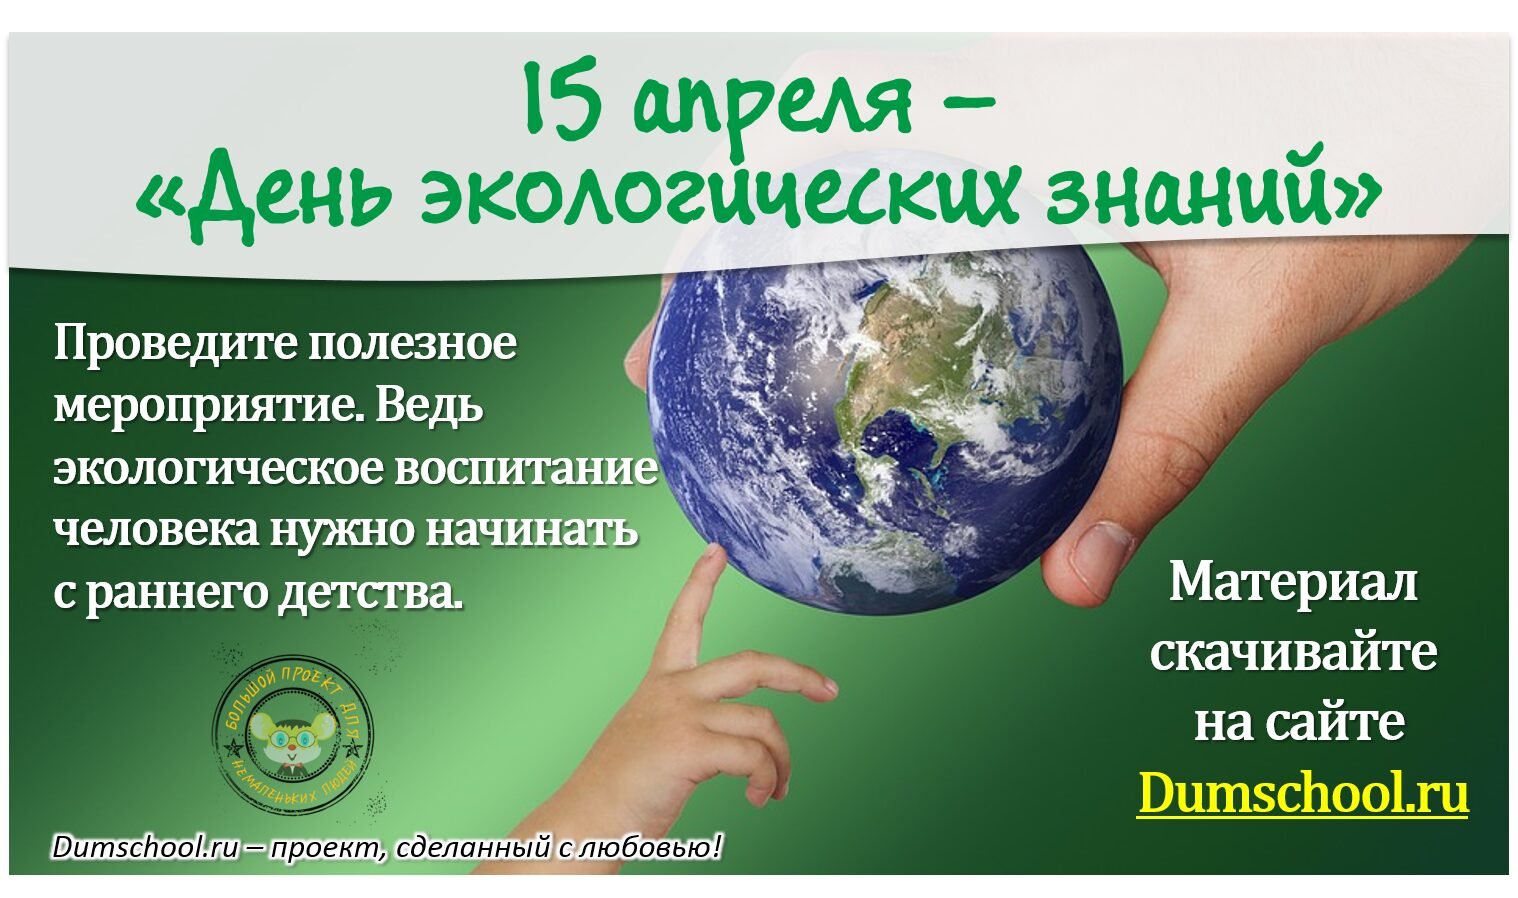 15 Апреля день экологических знаний. Всемирный день экологических знаний. День экологической грамотности. Открытка день экологических знаний.